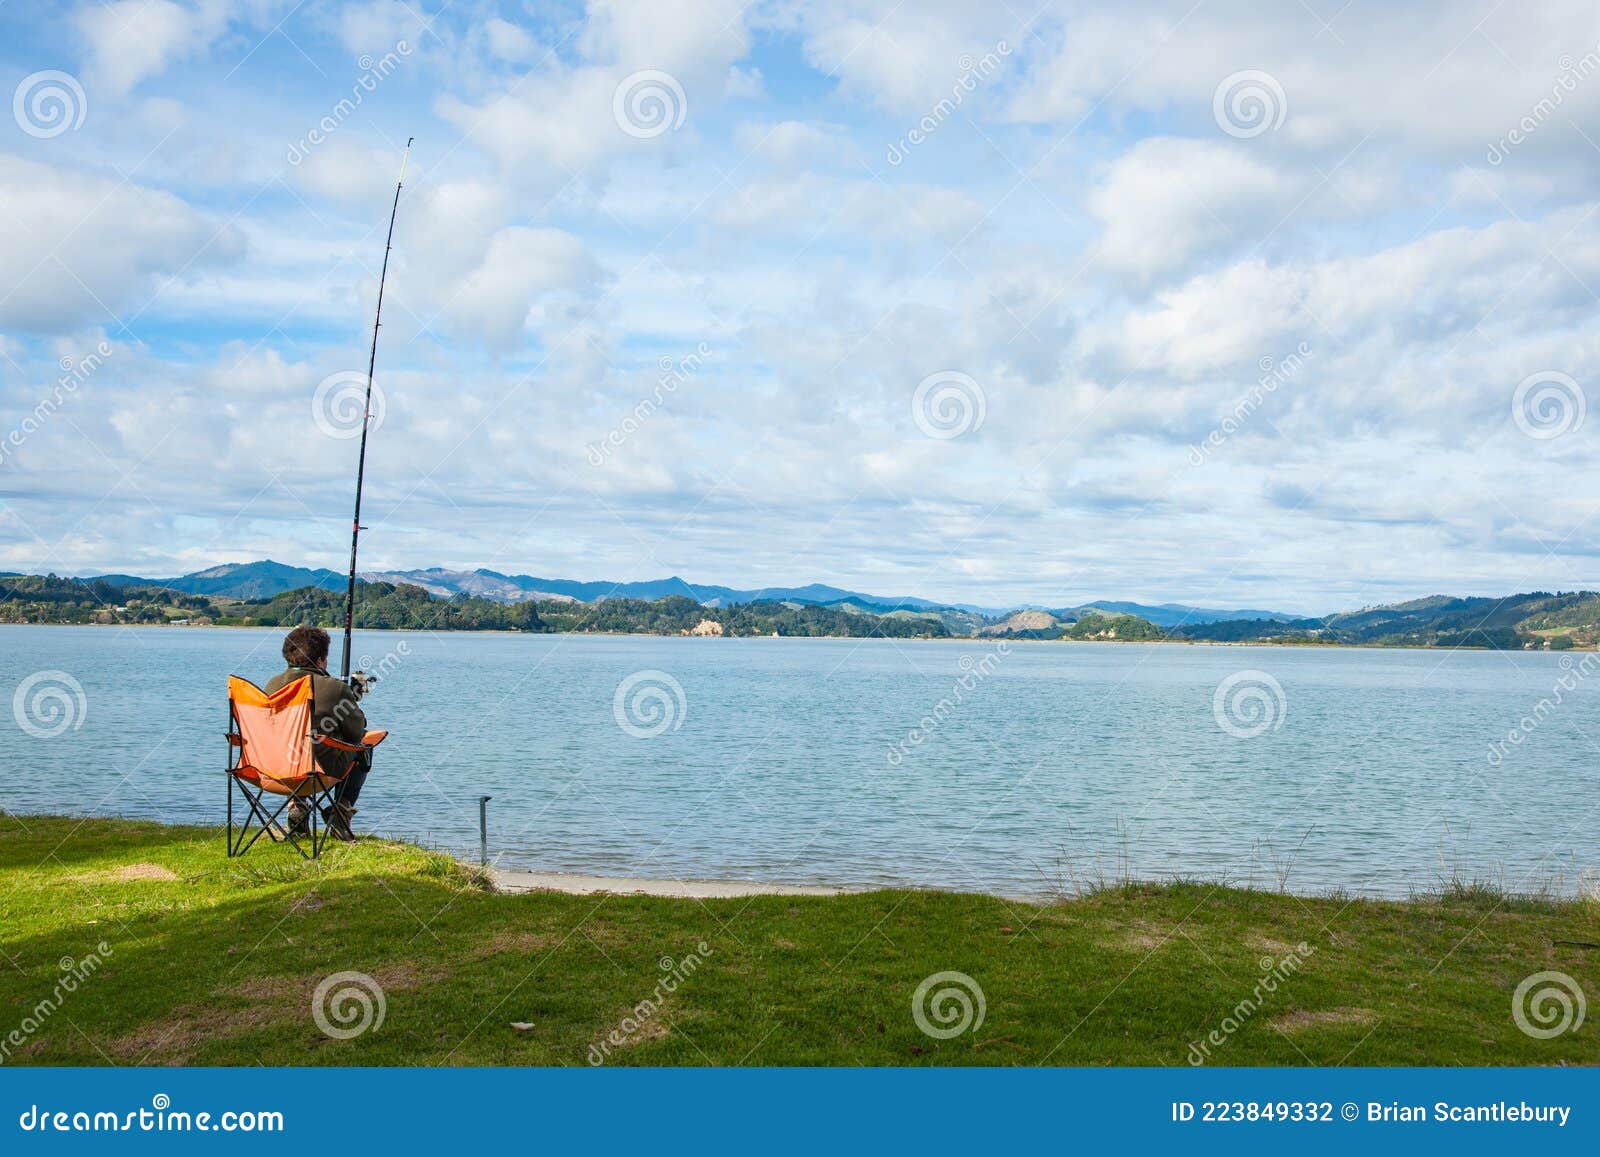 钓竿后侧的渔具座图库摄影片 图片包括有新建 视图 蓝色 一个 边缘 沿海 证实 人员